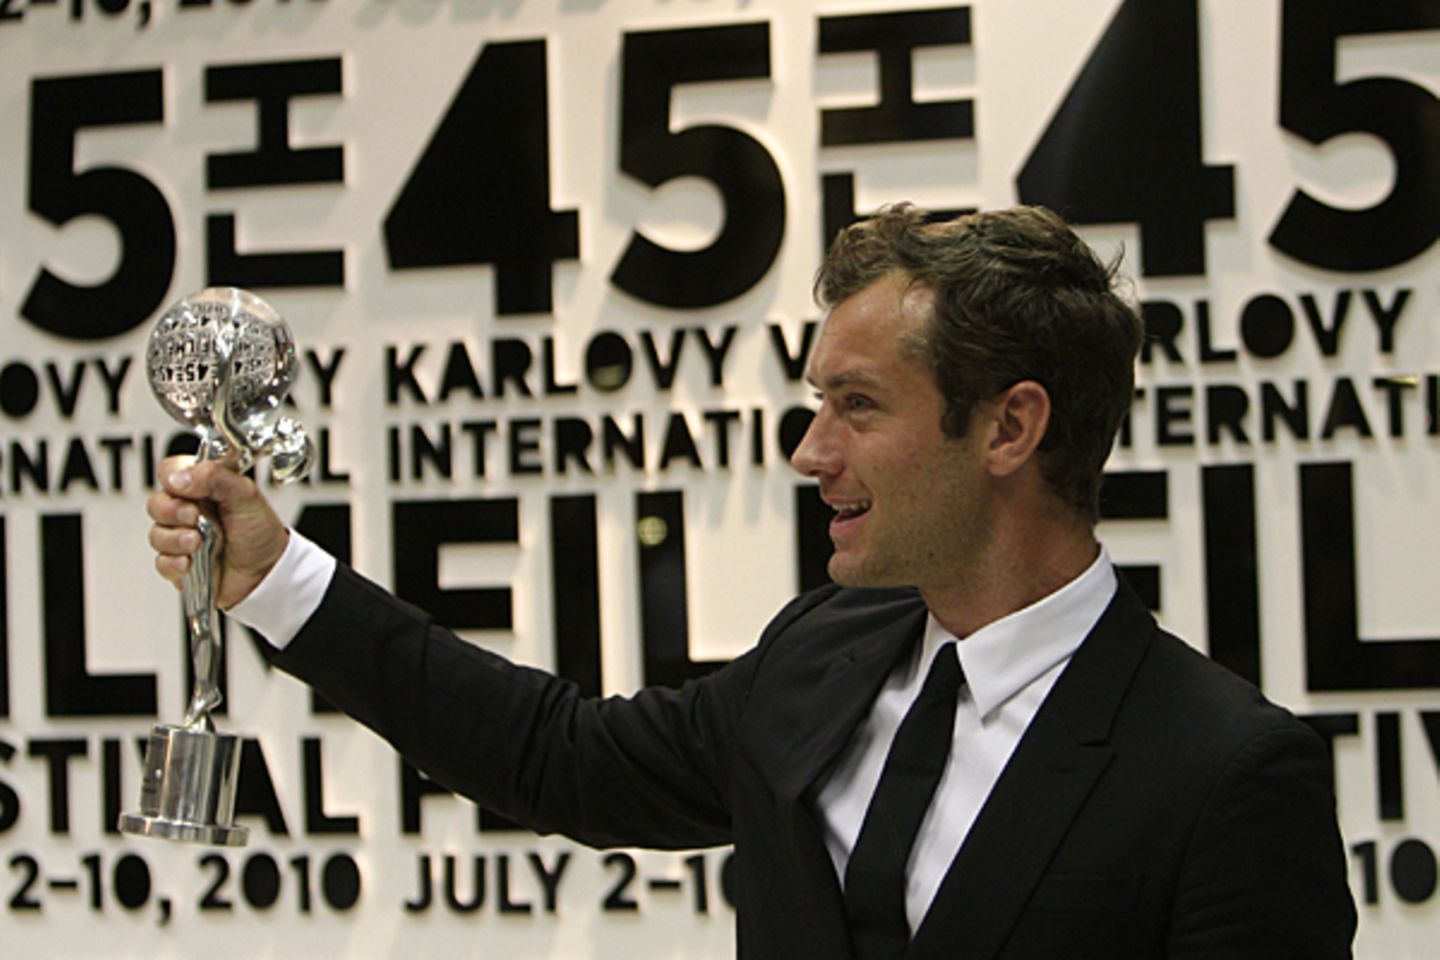 2010: Erst 37 und doch schon für sein Lebenswerk ausgezeichnet: Jude Law erhält im Juli bei den Filmfestspielen von Karlovy Vary